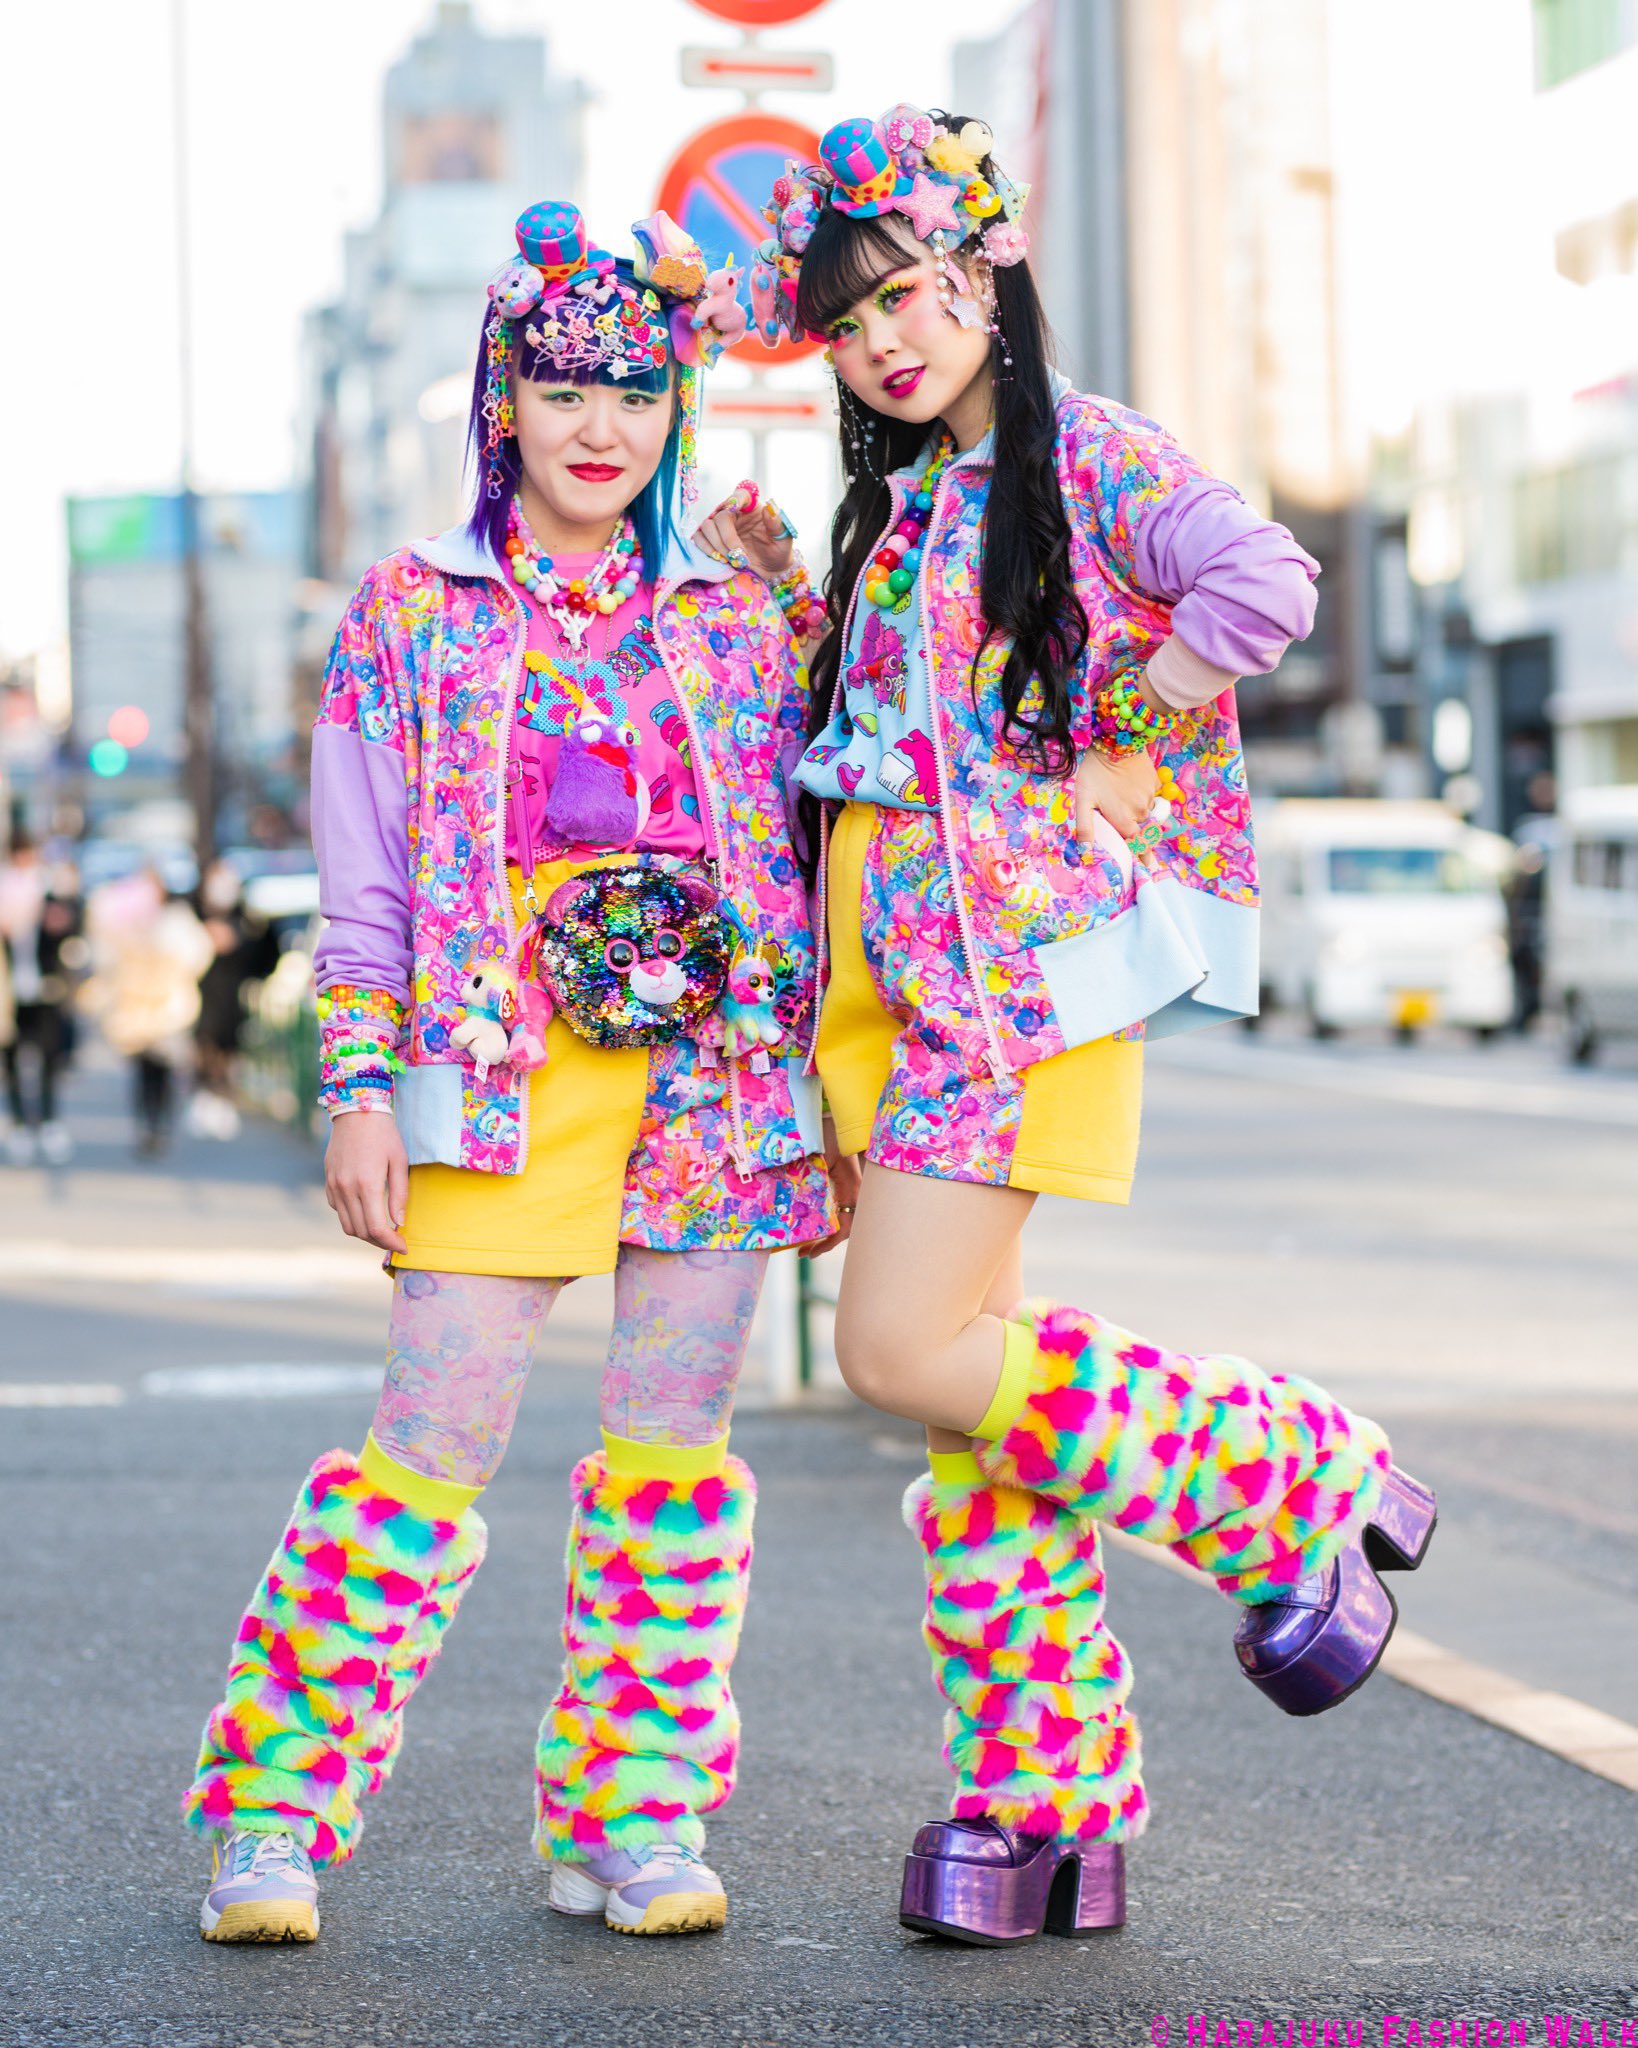 原宿ファッションウォーク Harajuku Fashion Walk Harajuku Fw Twitter